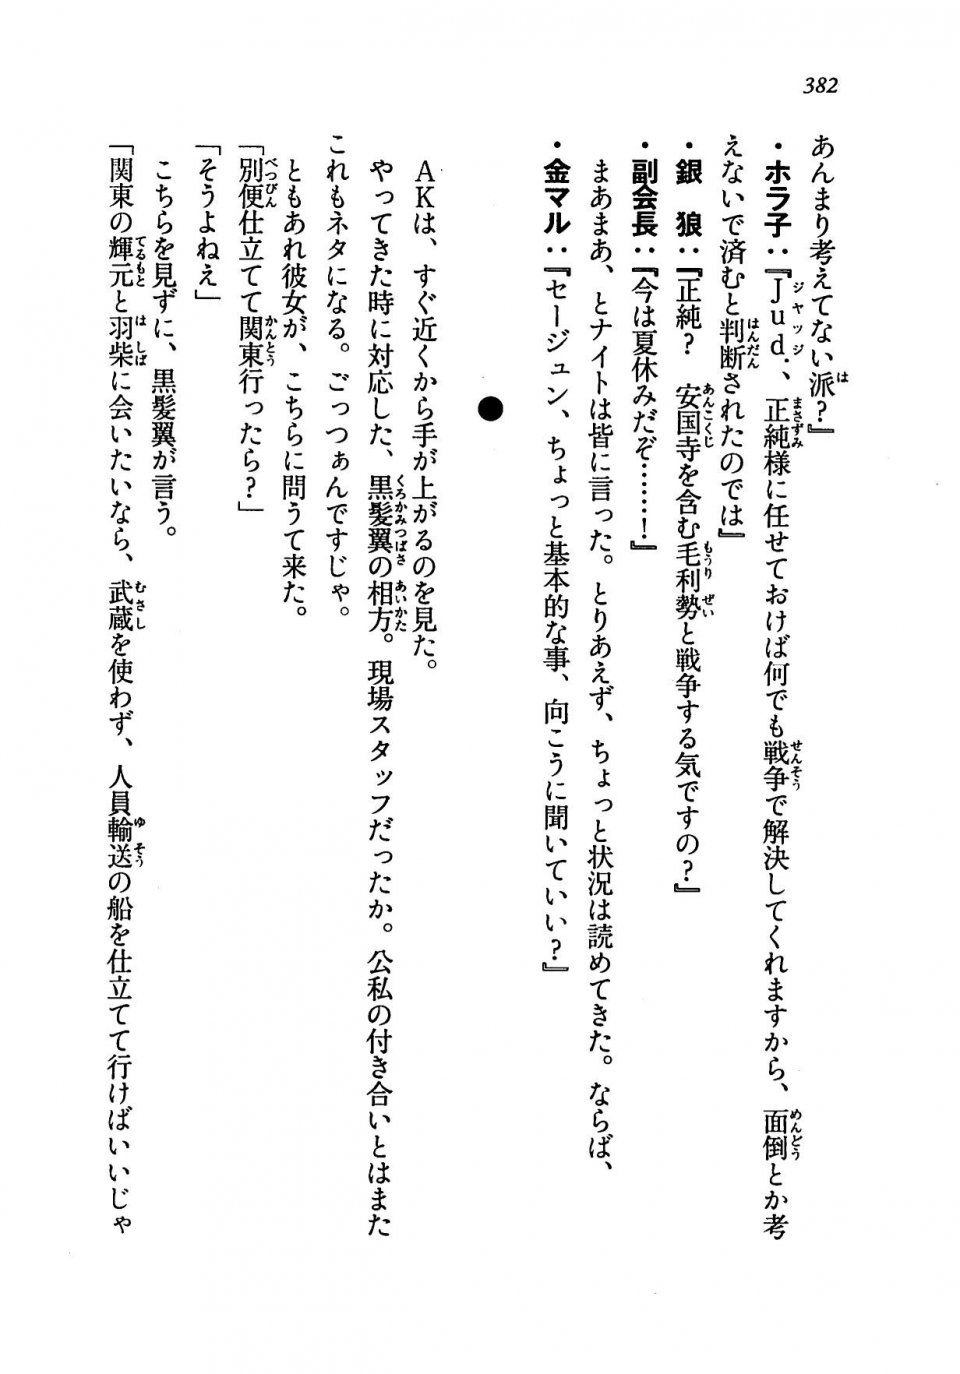 Kyoukai Senjou no Horizon LN Vol 19(8A) - Photo #382